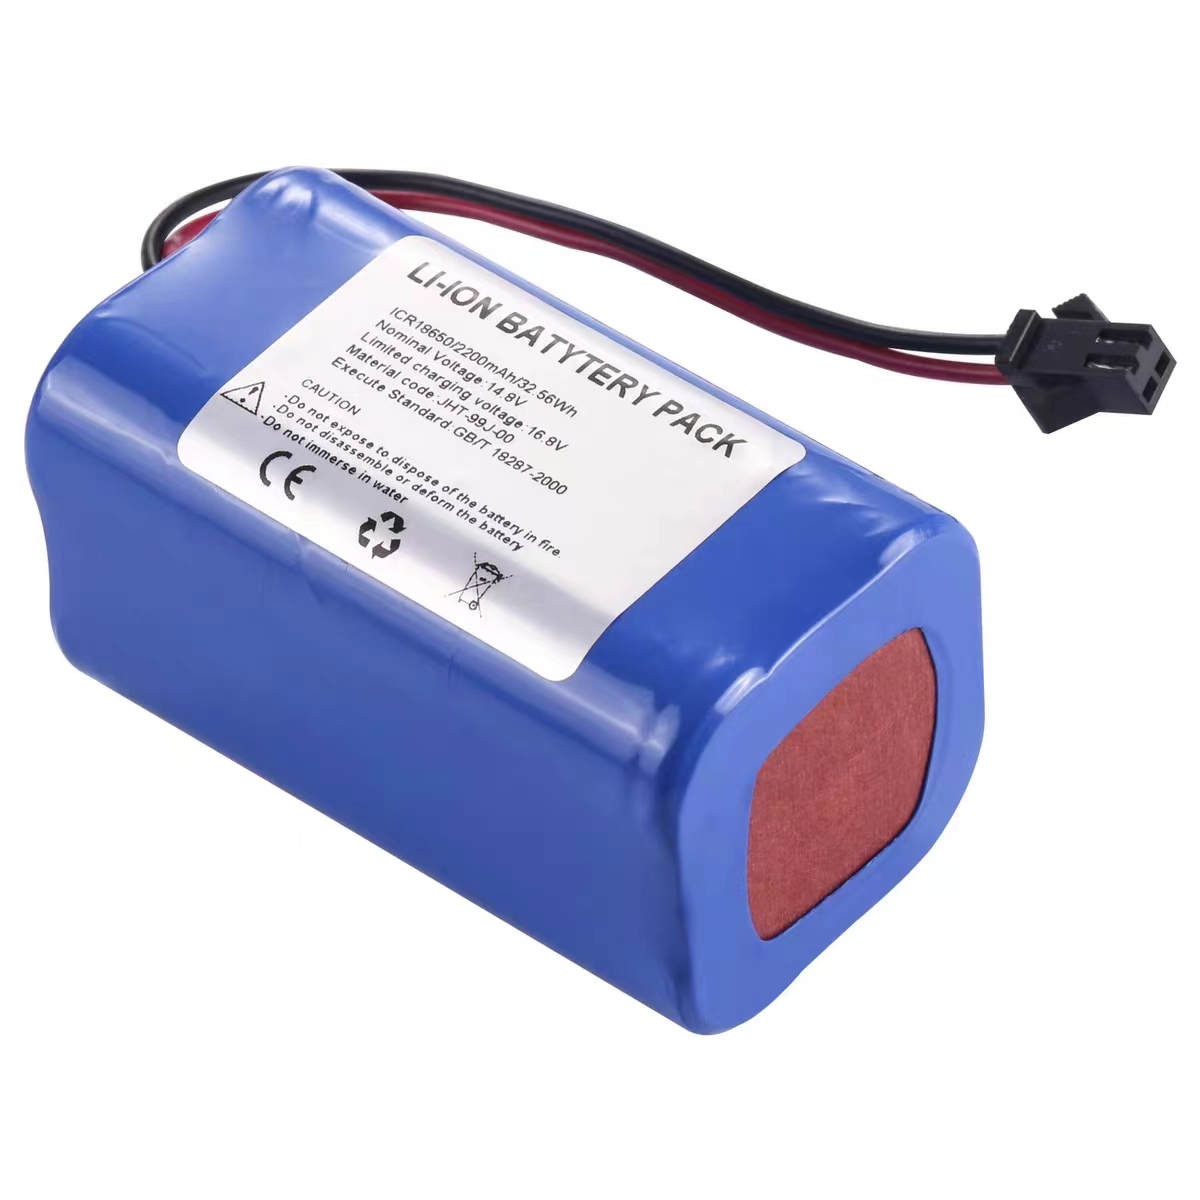 京柏JPD-300P超声胎儿监护仪电池ICR18650 2200mAh 14.8V充电电池 - 图0